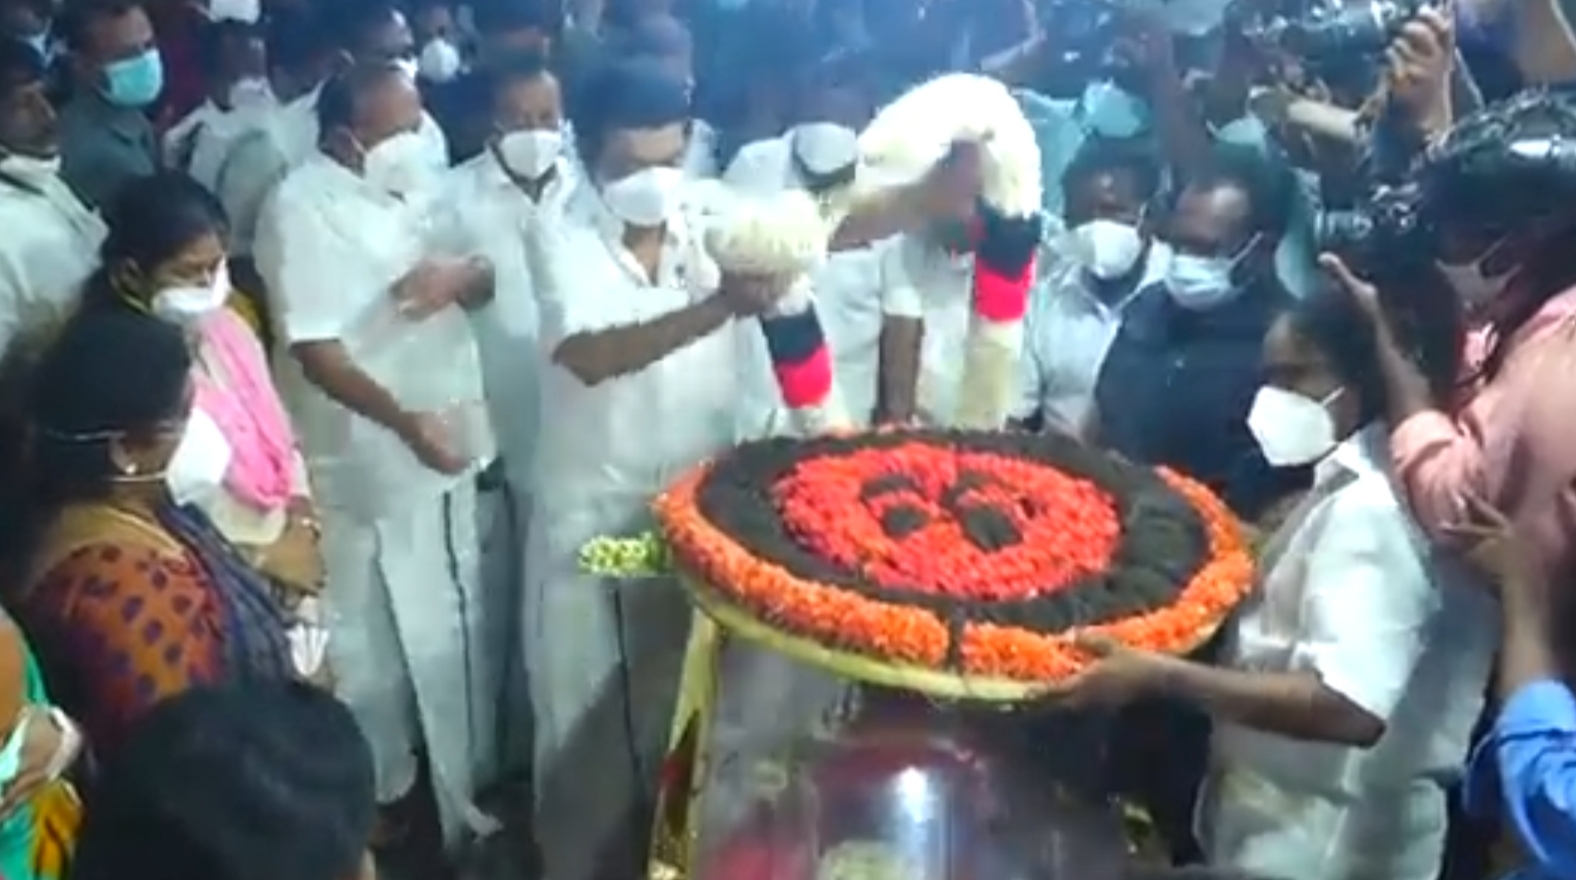 veerapandi raja  funeral ceremony  funeral ceremony of veerapandi raja  வீரபாண்டி ராஜாவின் உடல் நல்லடக்கம்  வீரபாண்டி ராஜா  நல்லடக்கம்